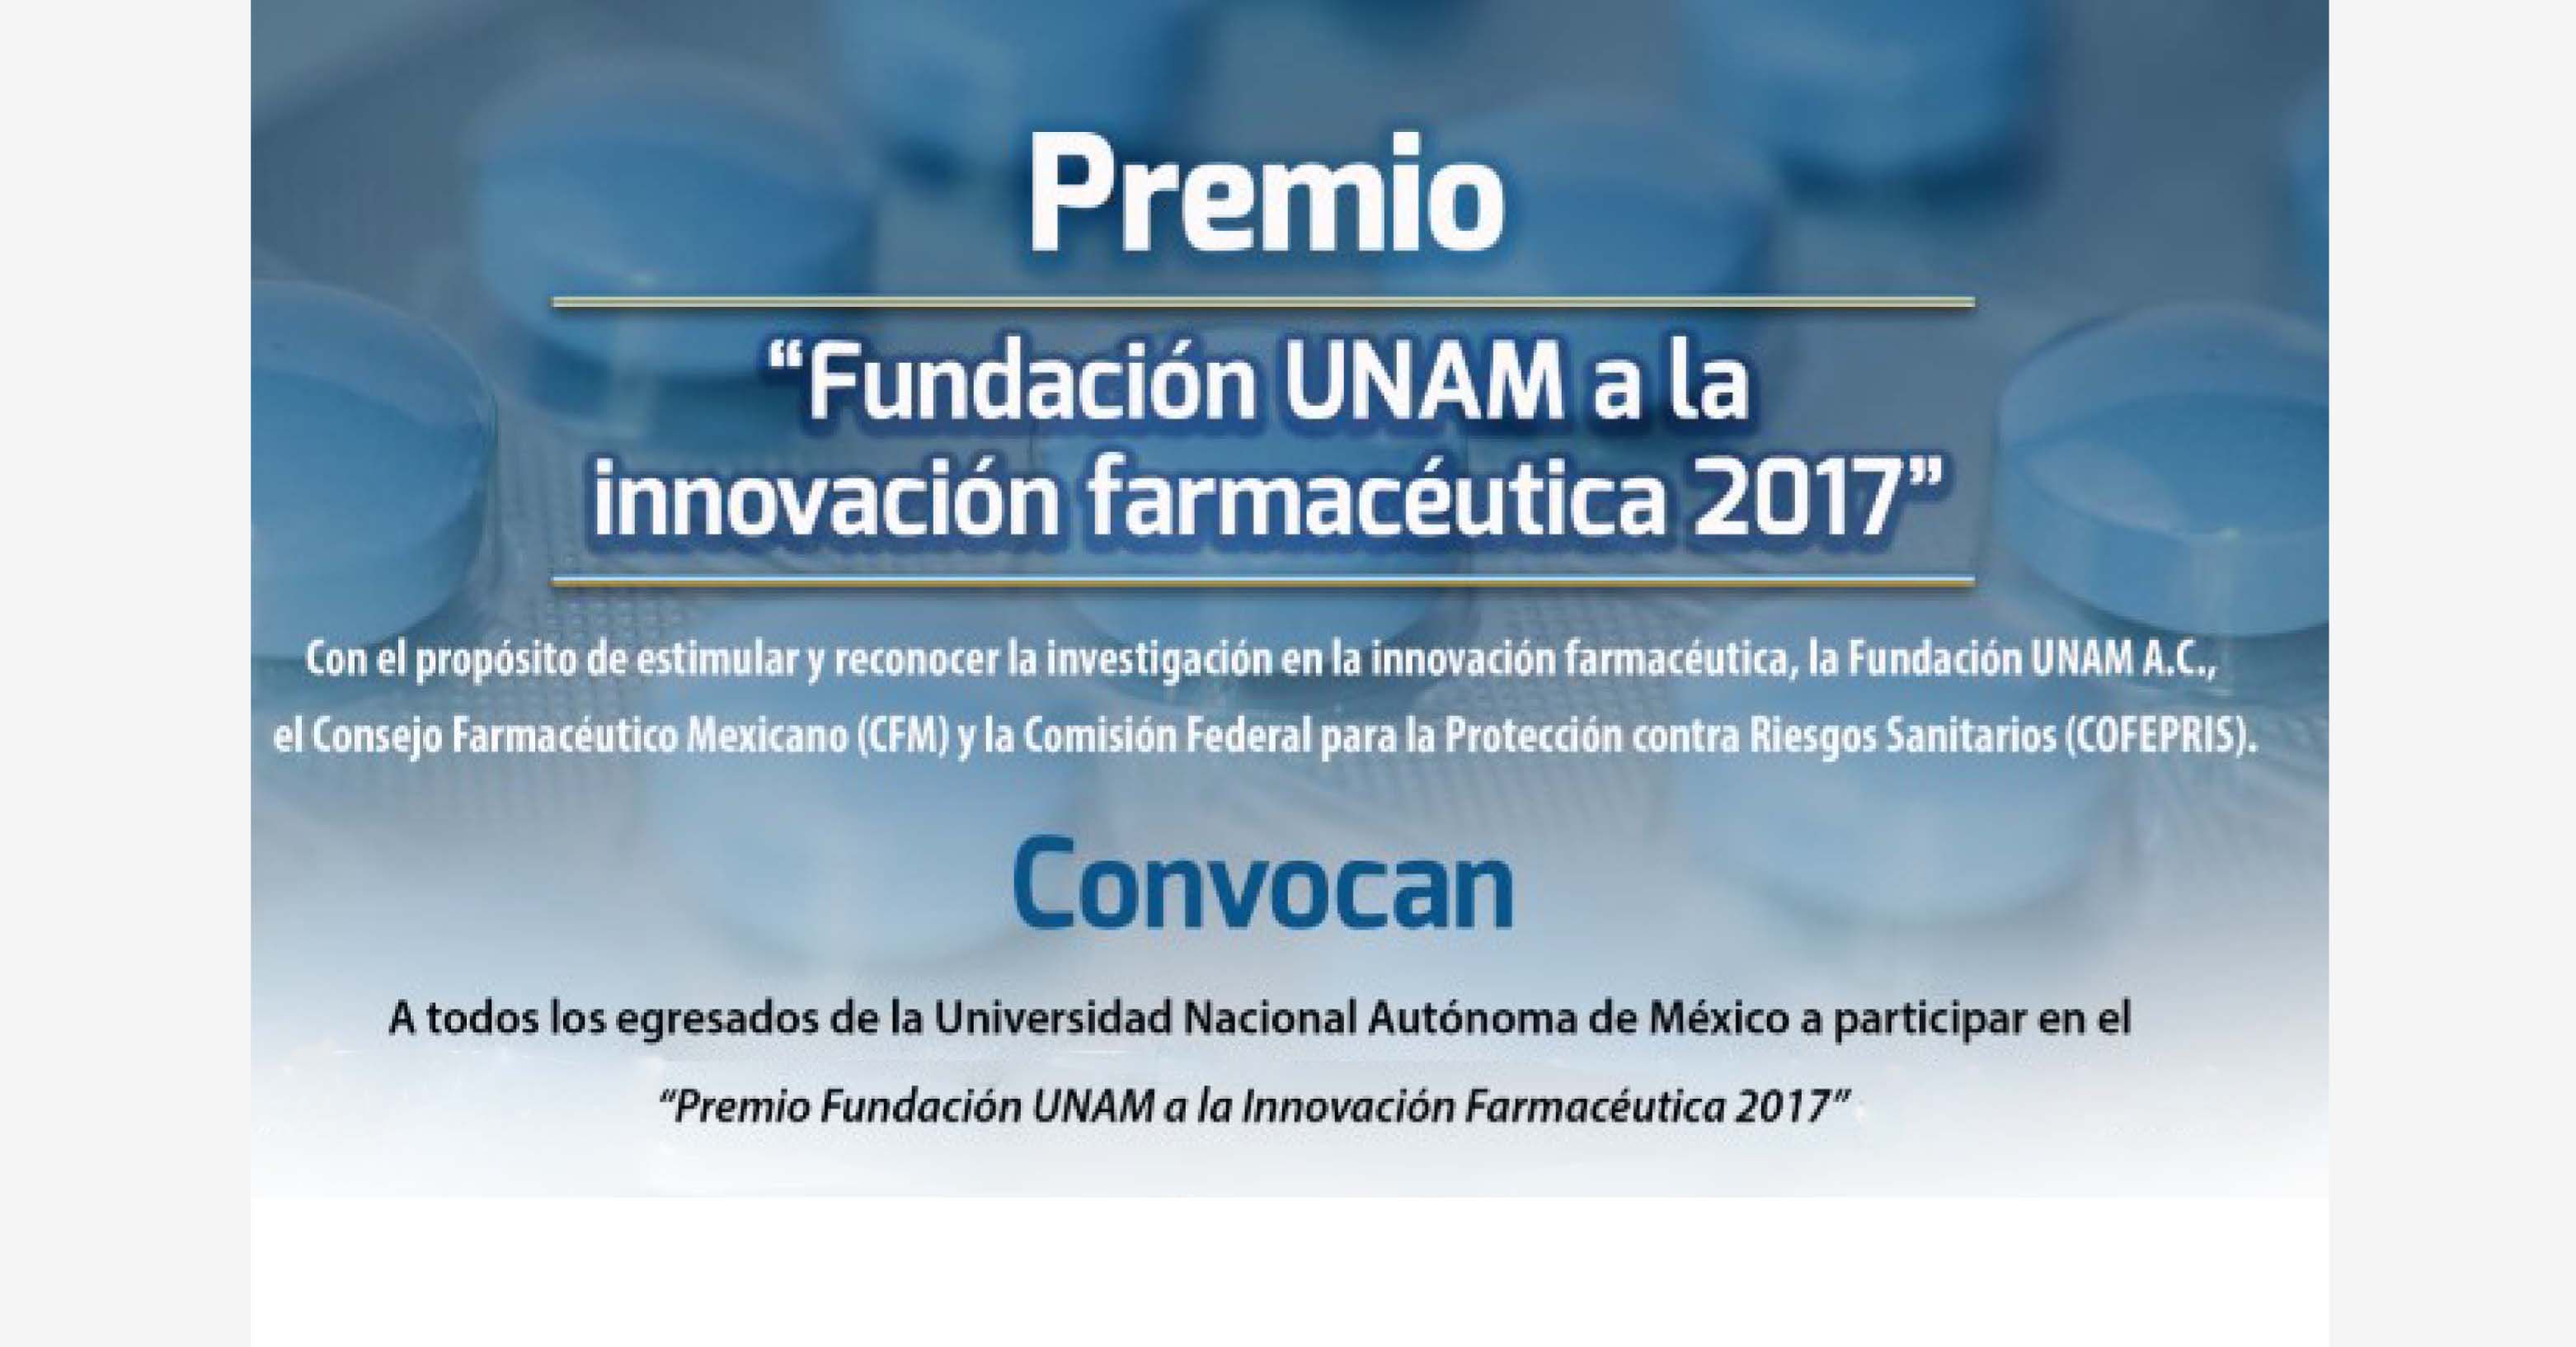 Premio Fundación UNAM a la Innovación Farmacéutica 2017